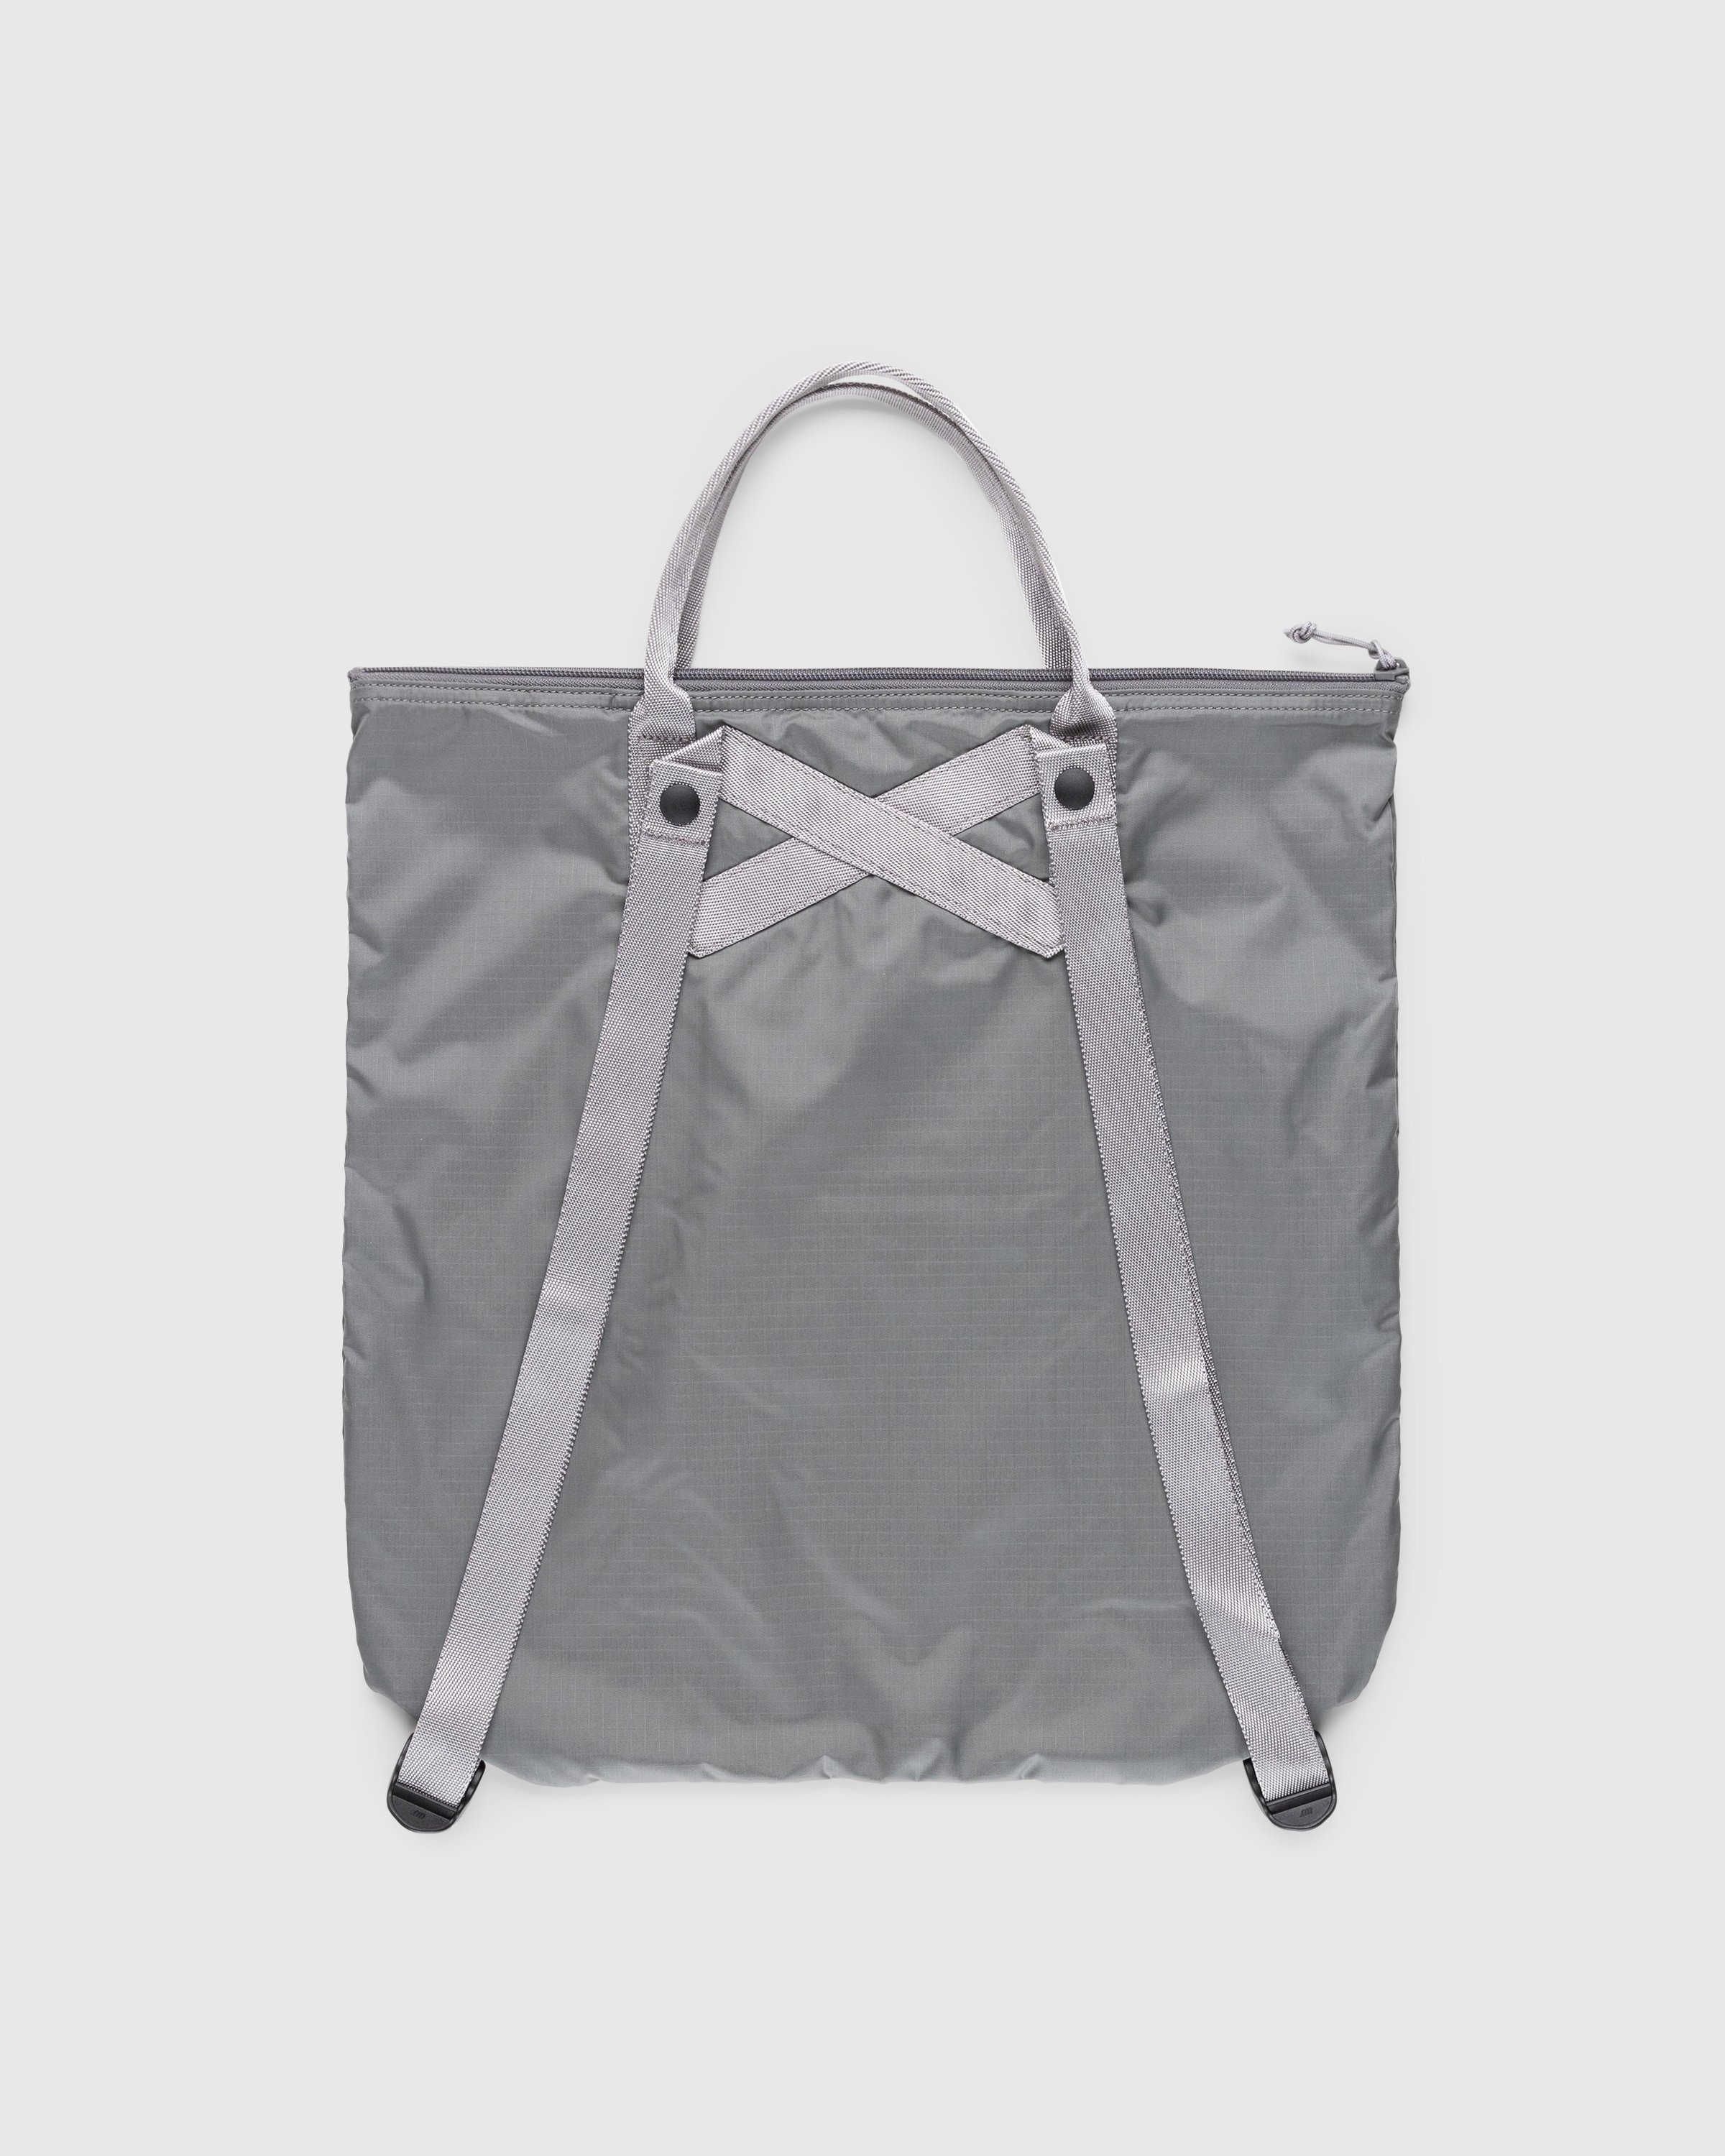 Porter-Yoshida & Co. - Flex 2-Way Tote Bag Grey - Accessories - Grey - Image 2